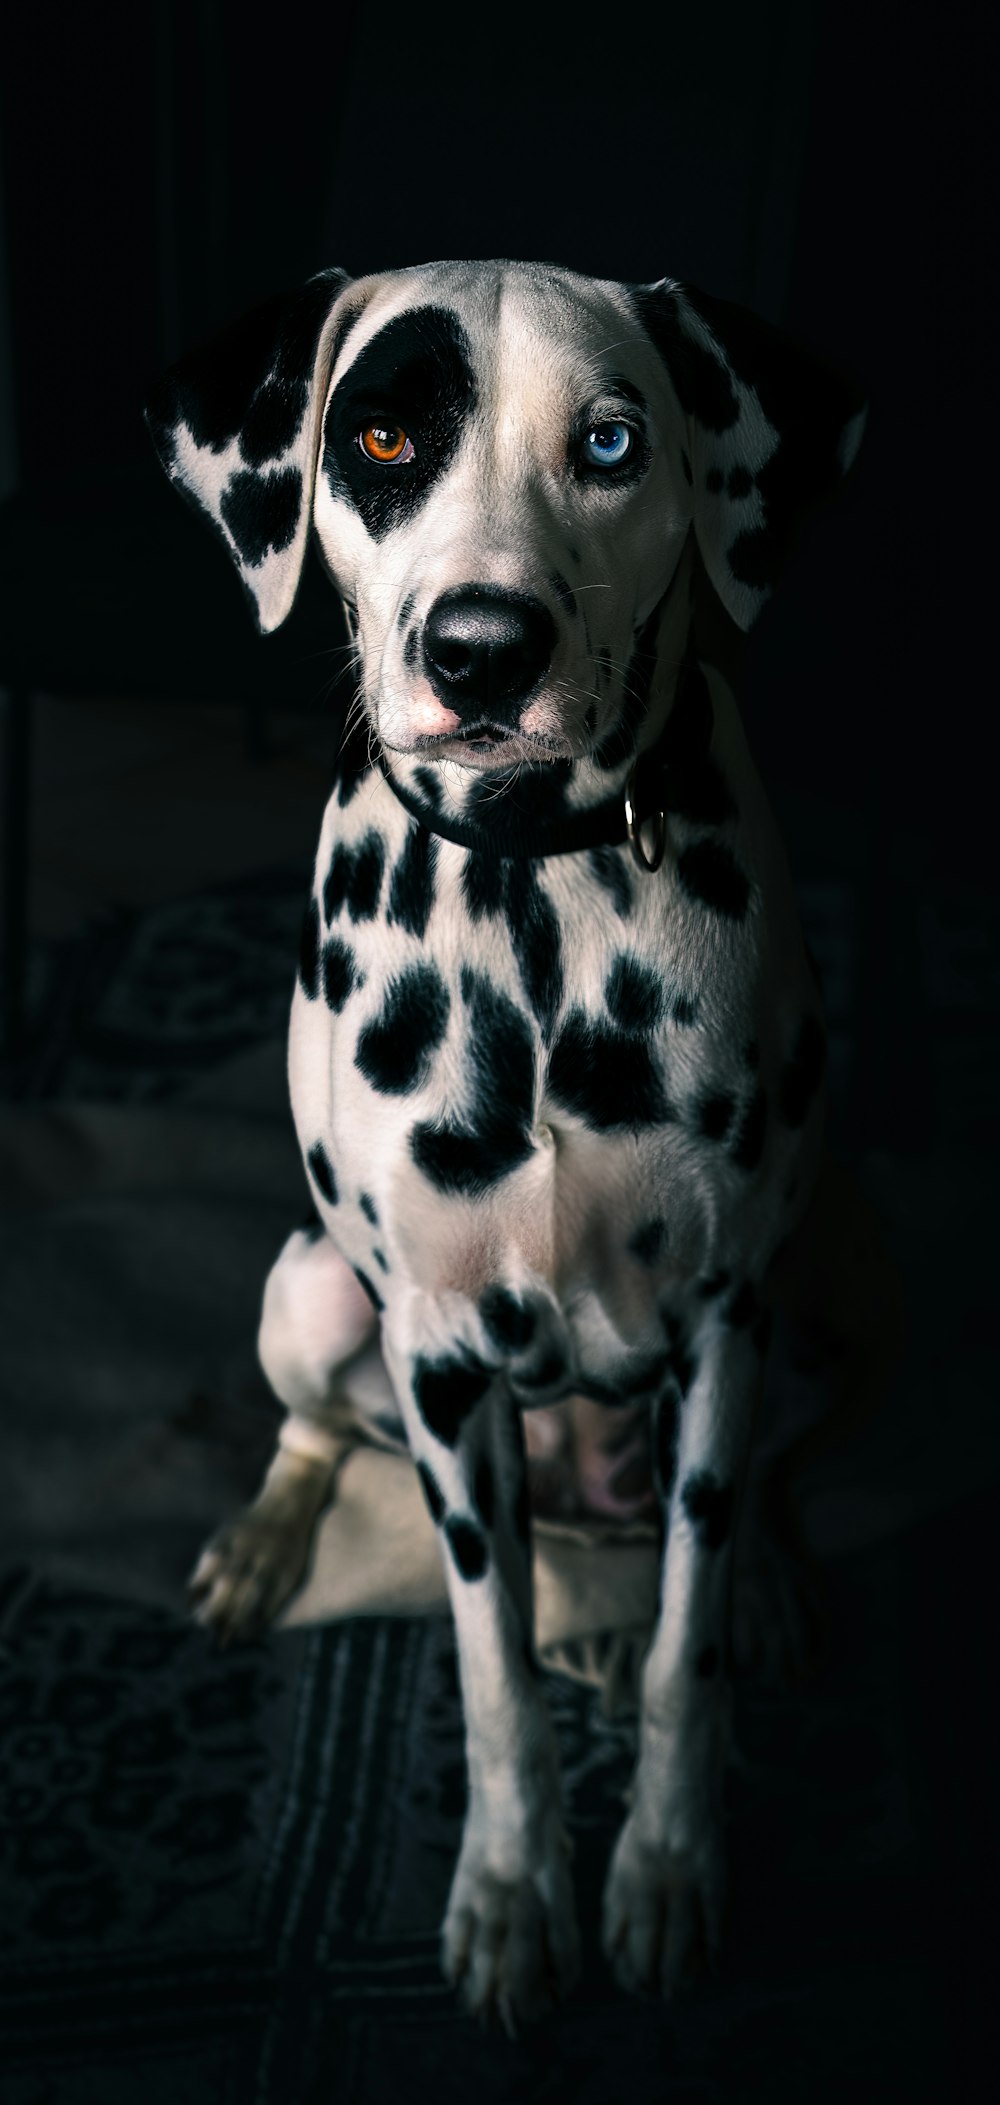 a dalmatian dog sitting on a rug in the dark